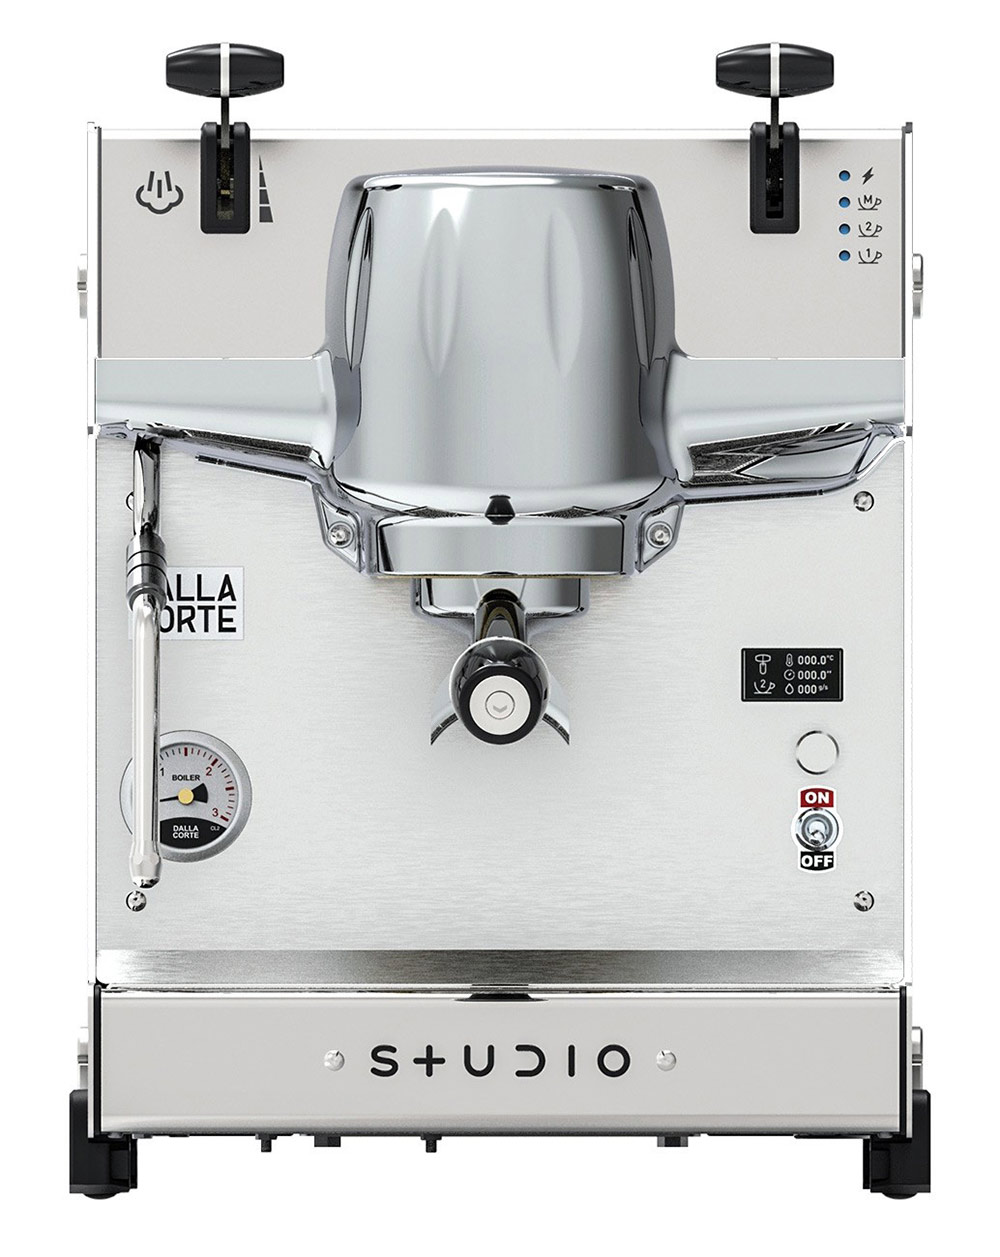 Dalla Corte STUDIO, Siebträger Espressomaschine Kaffeemaschine.